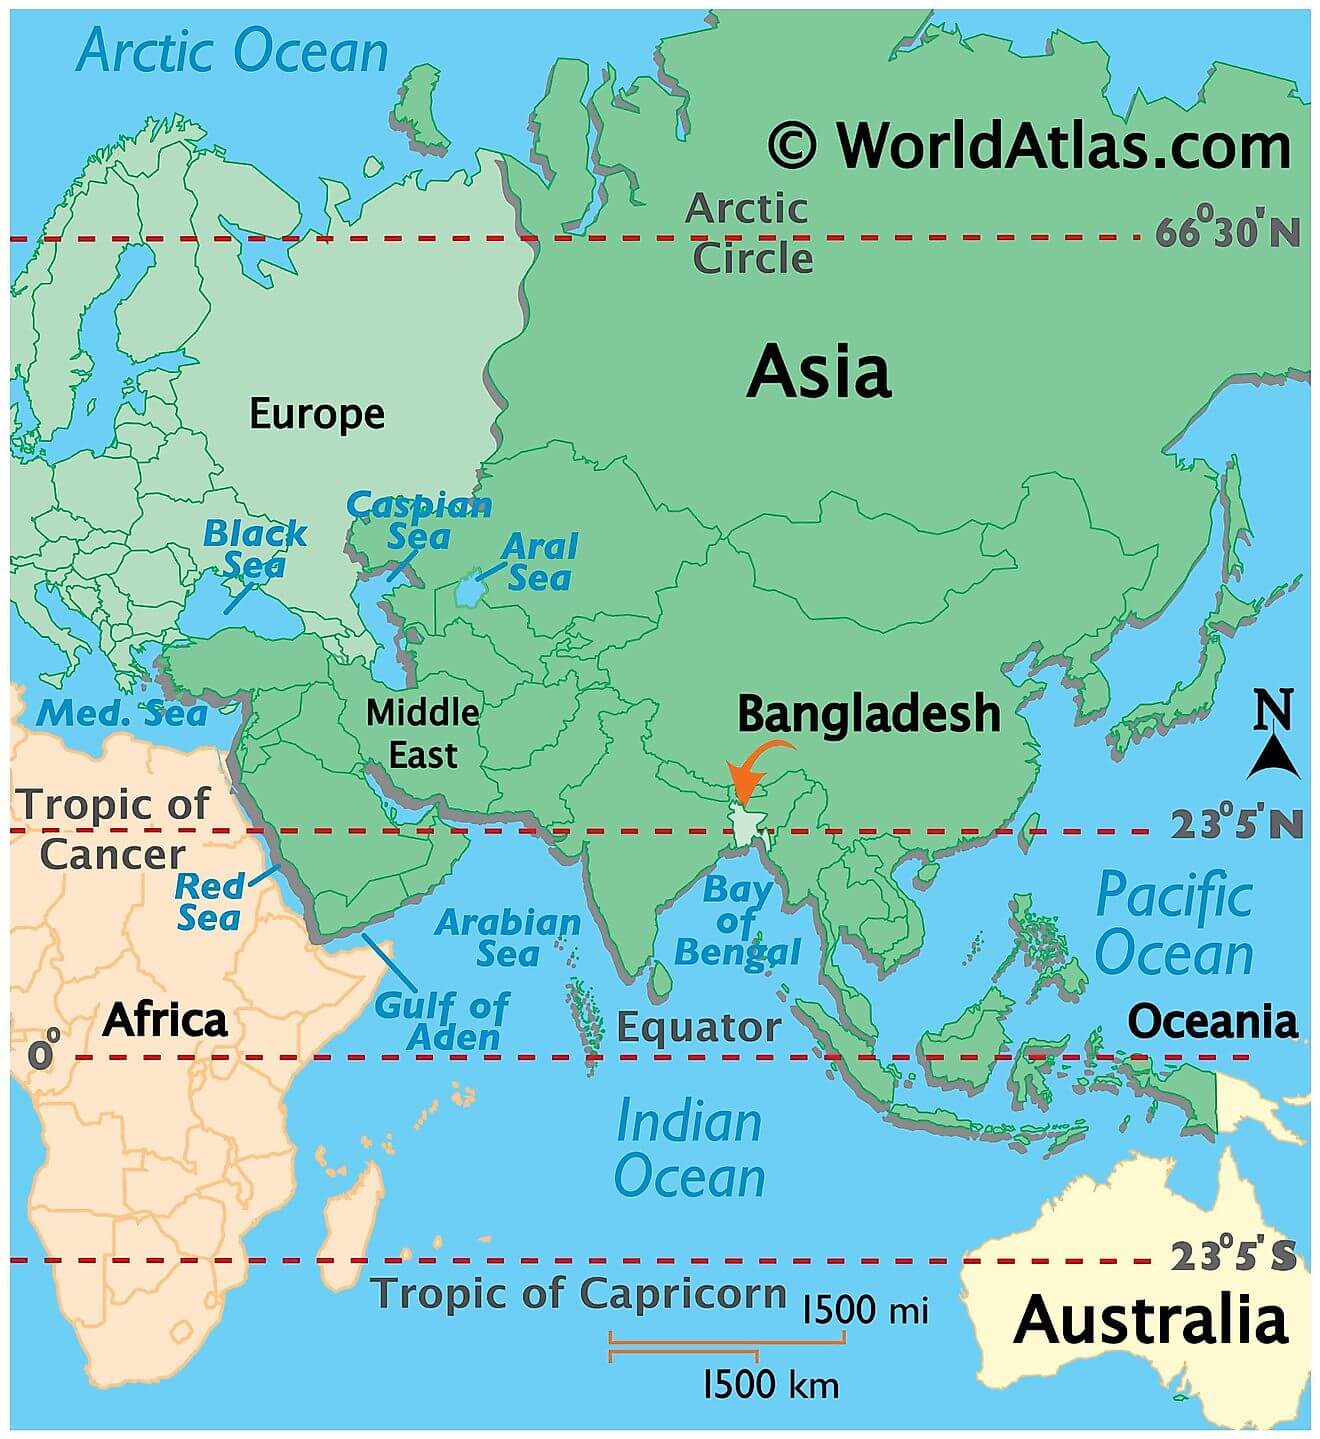 Bangladesh ở đâu?